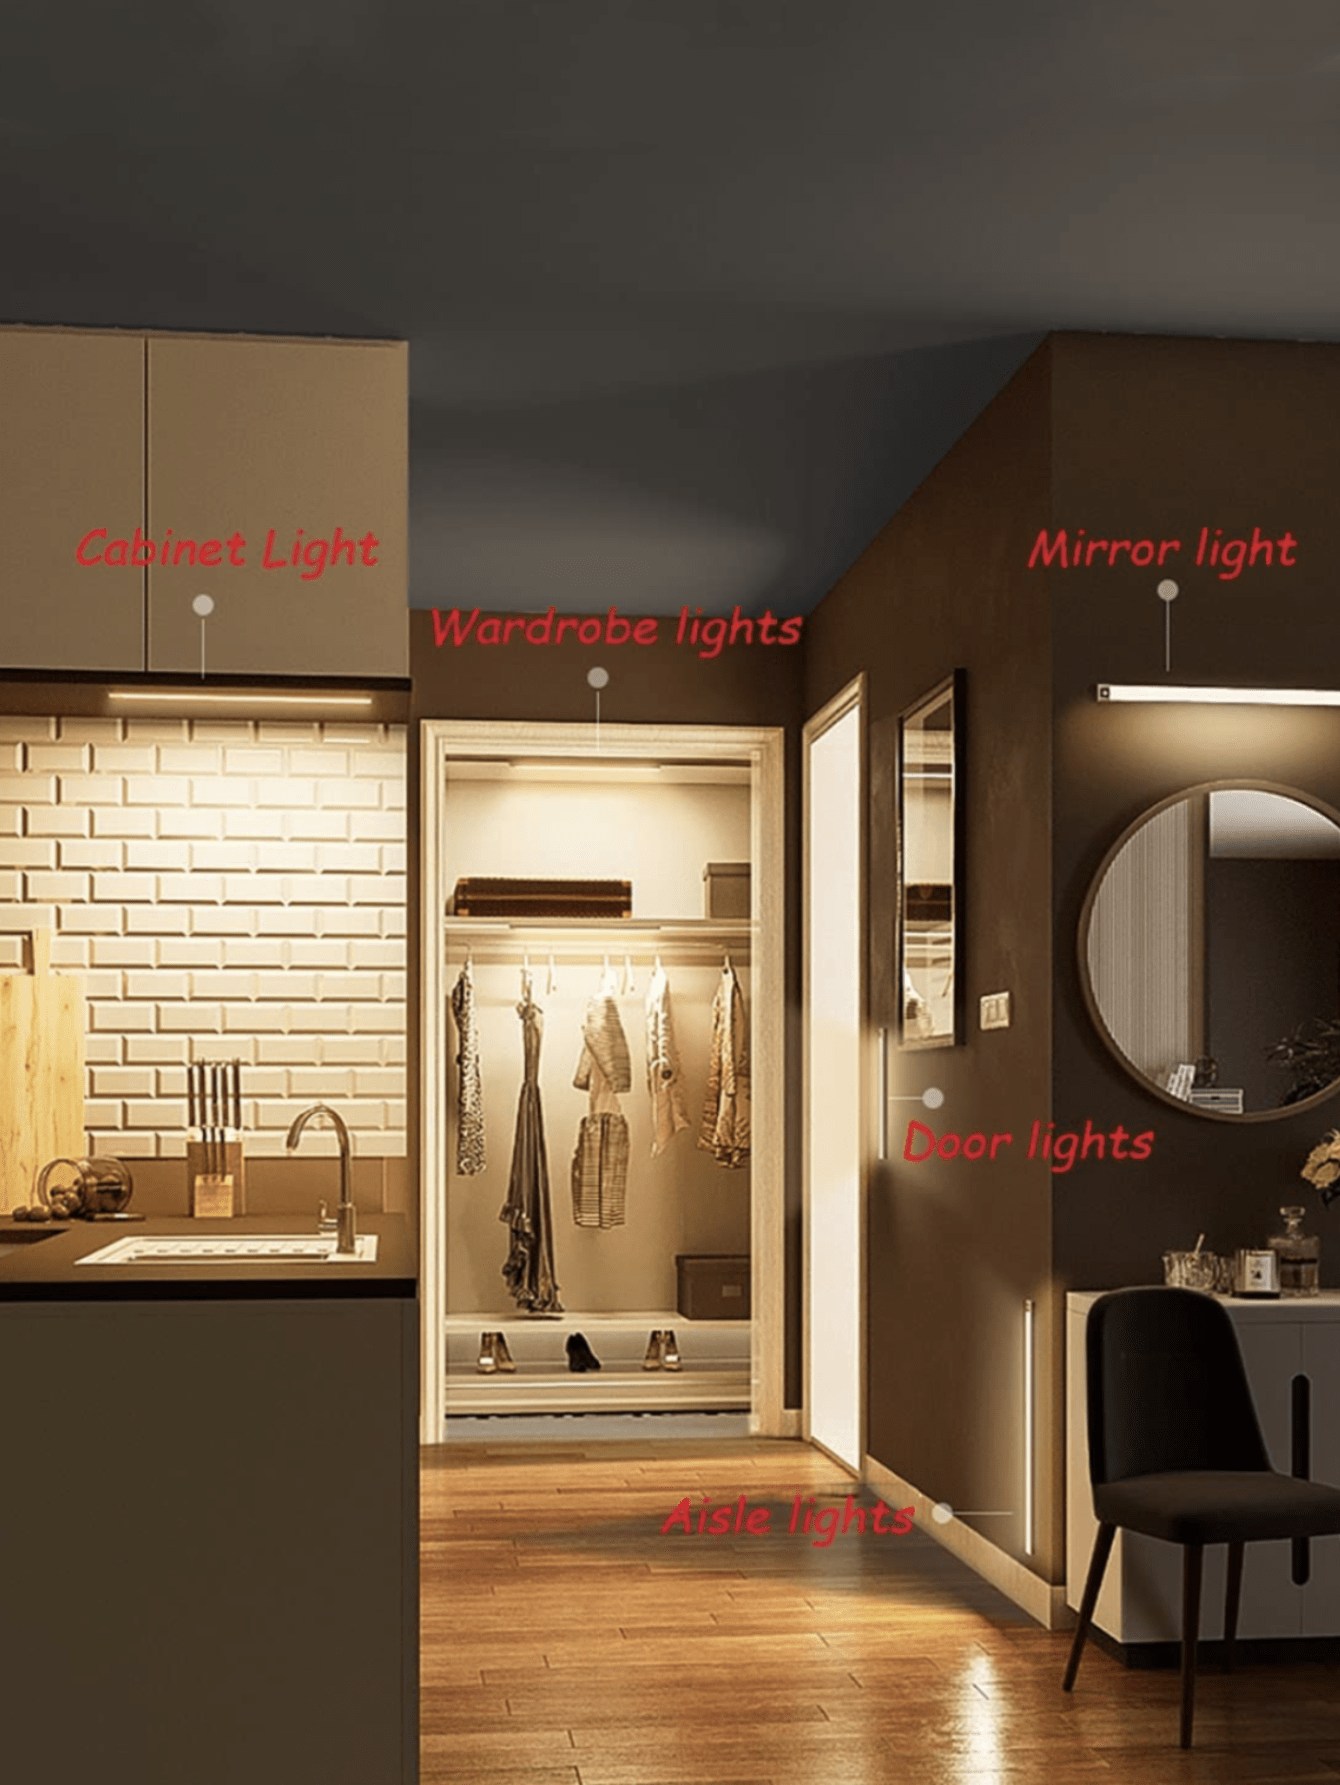 1pc ABS Body Sensor Cabinet Light, Modern White Motion Sensor Under Cabinet Light For Home